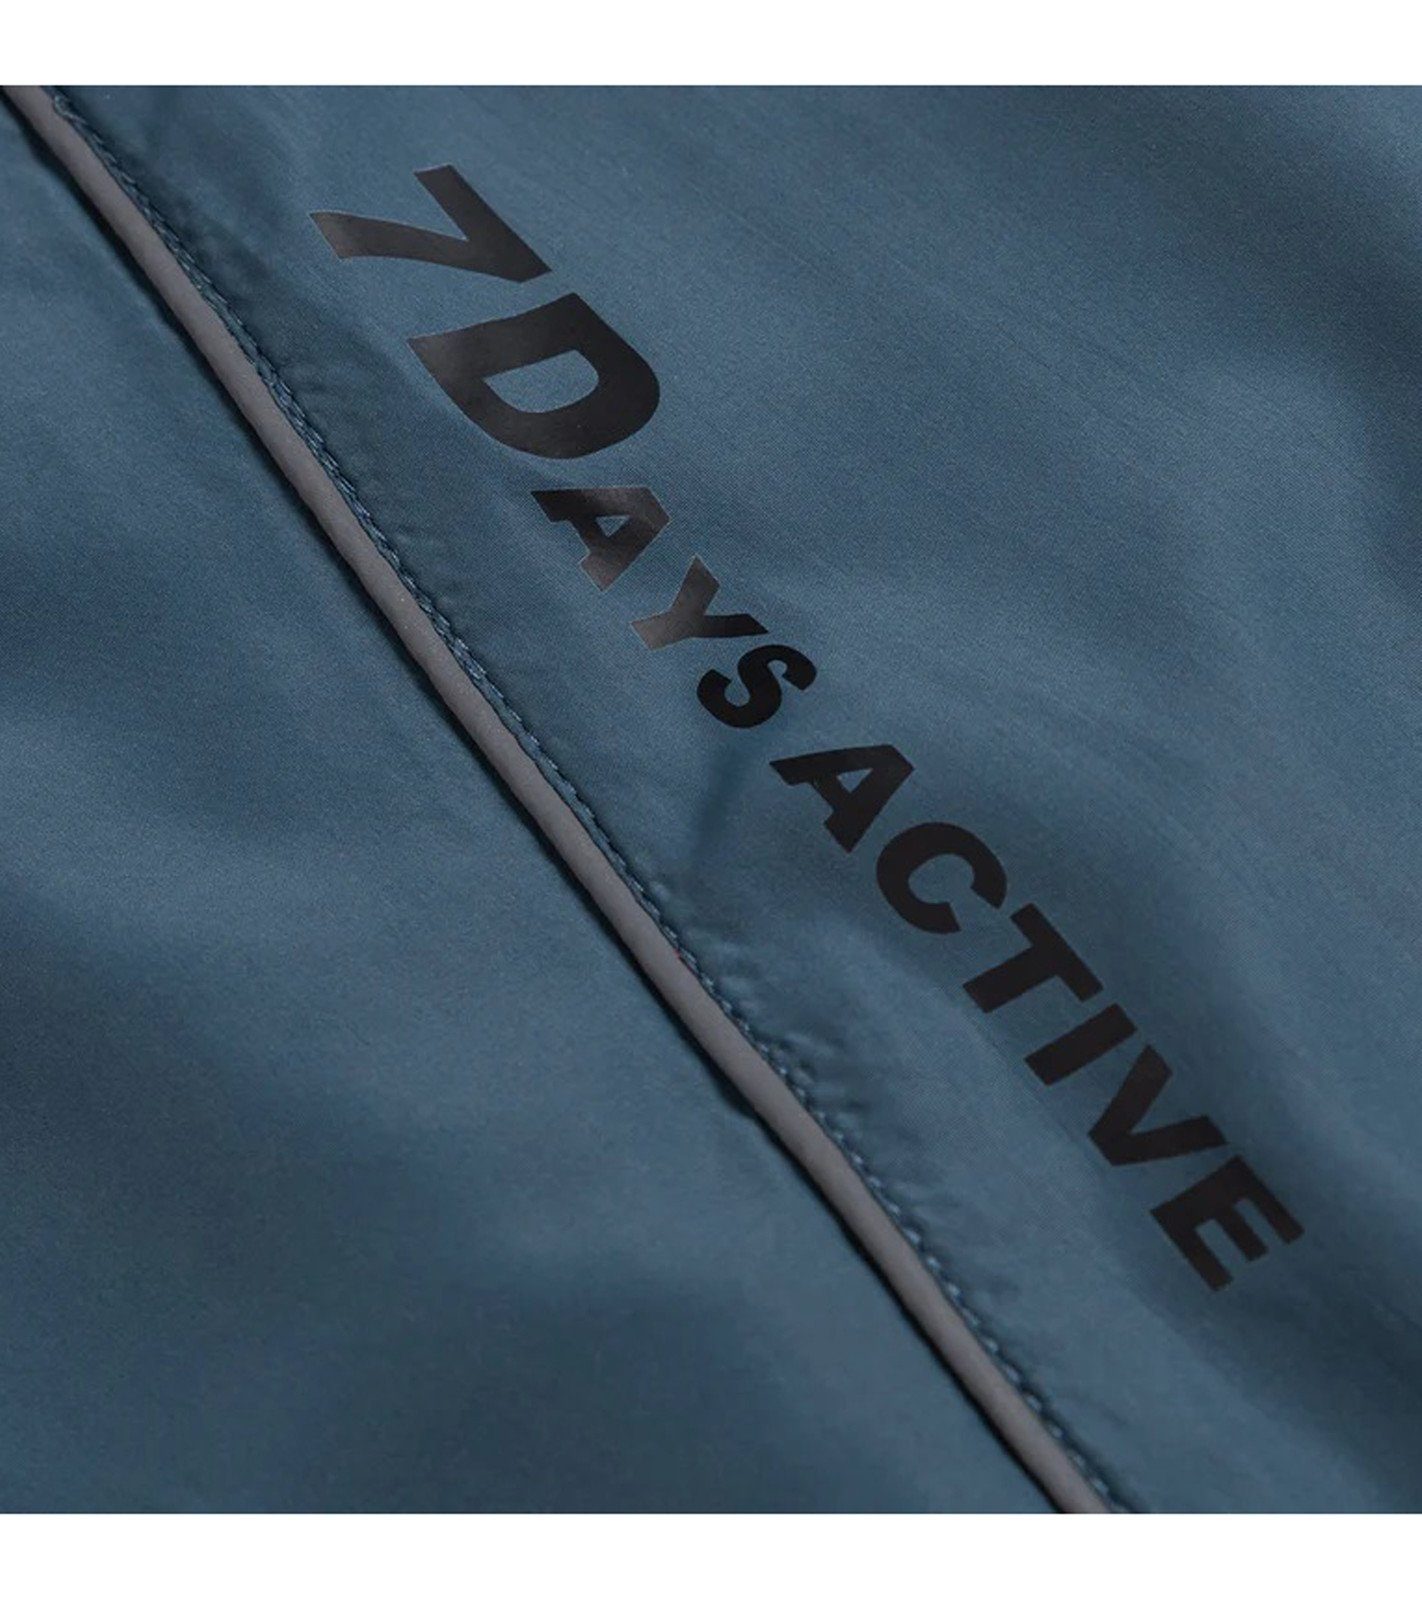 Jacket Details Lauf-Jacke Active Trainingsjacke Blau Track Aicot 7 DAYS mit reflektierenden Active DAYS 7 Sport-Jacke